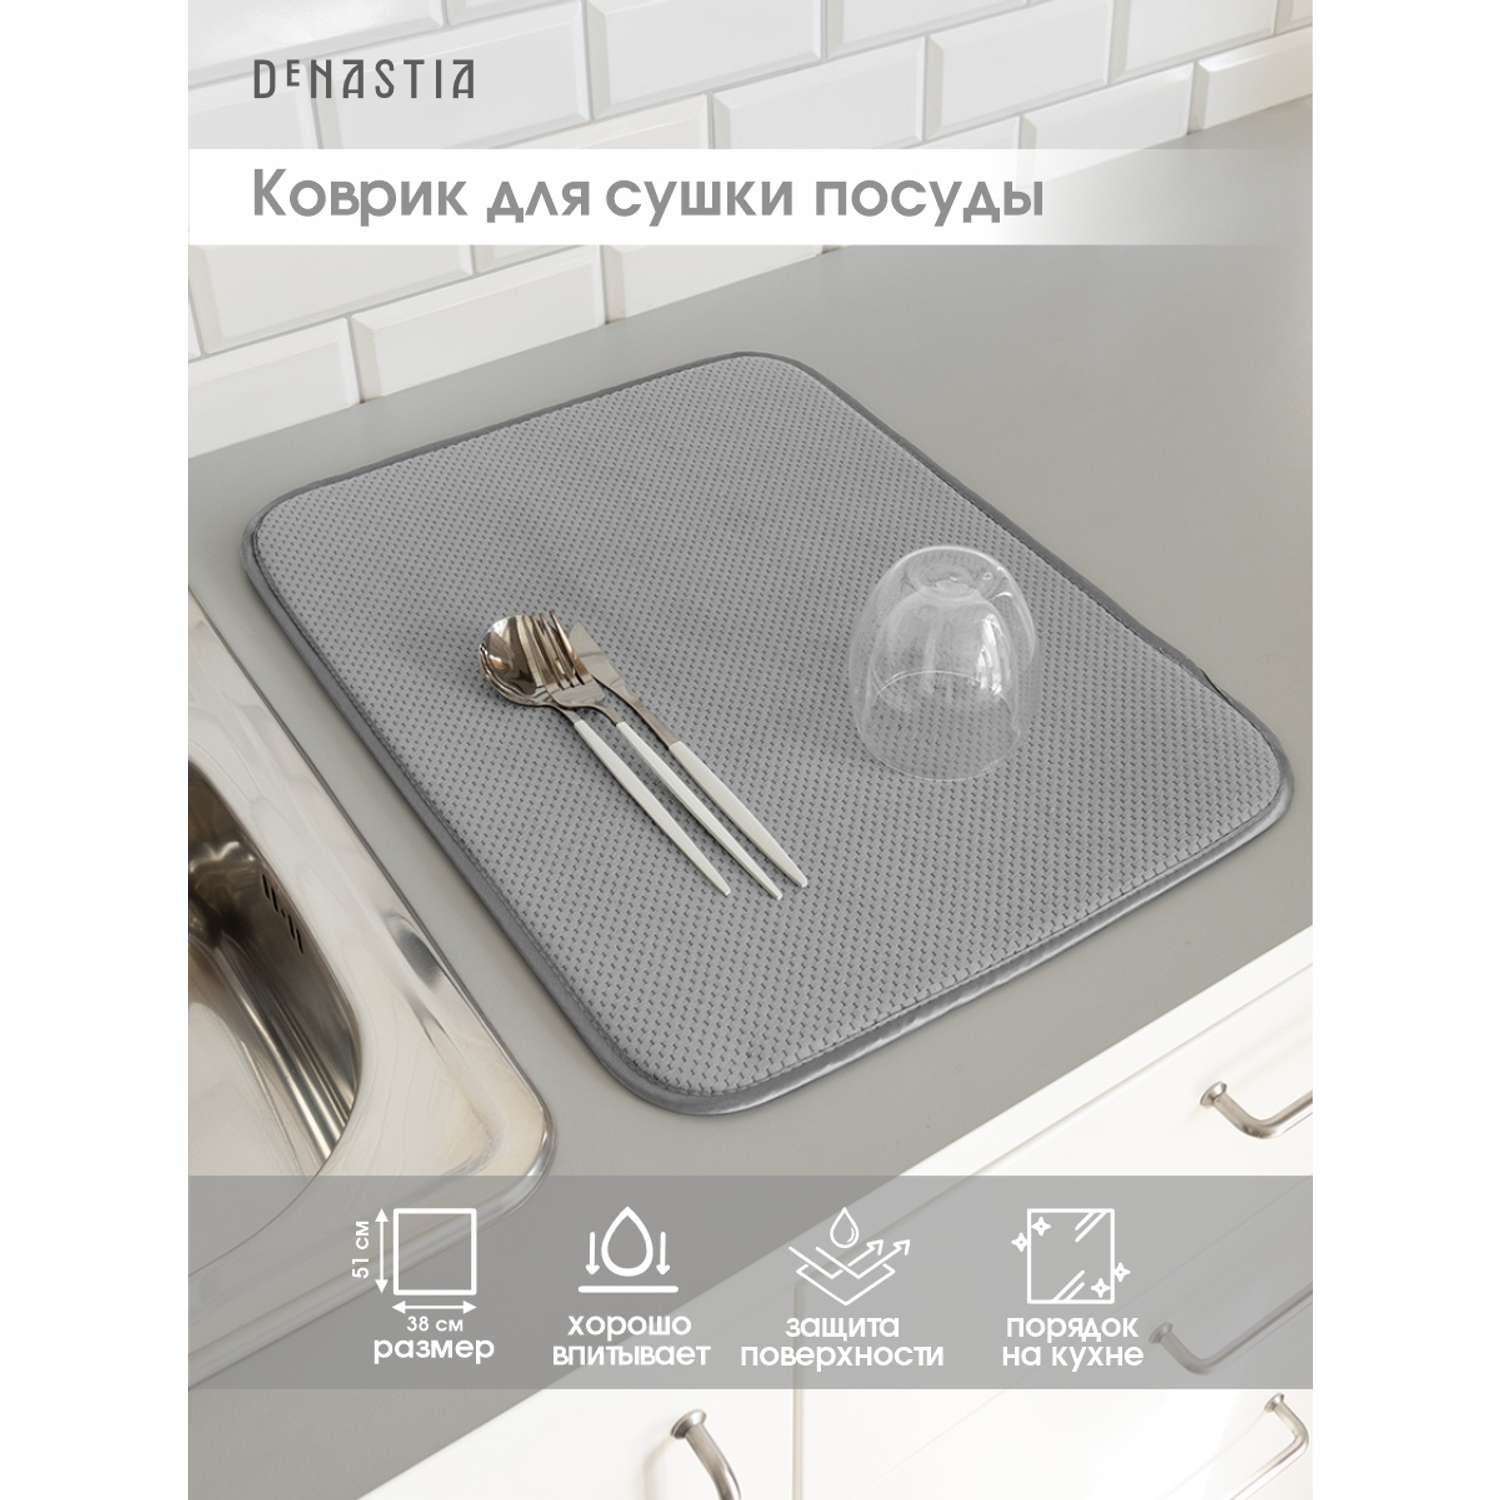 Коврик для сушки посуды DeNASTIA 38x51 см светло-серый T000208 - фото 2